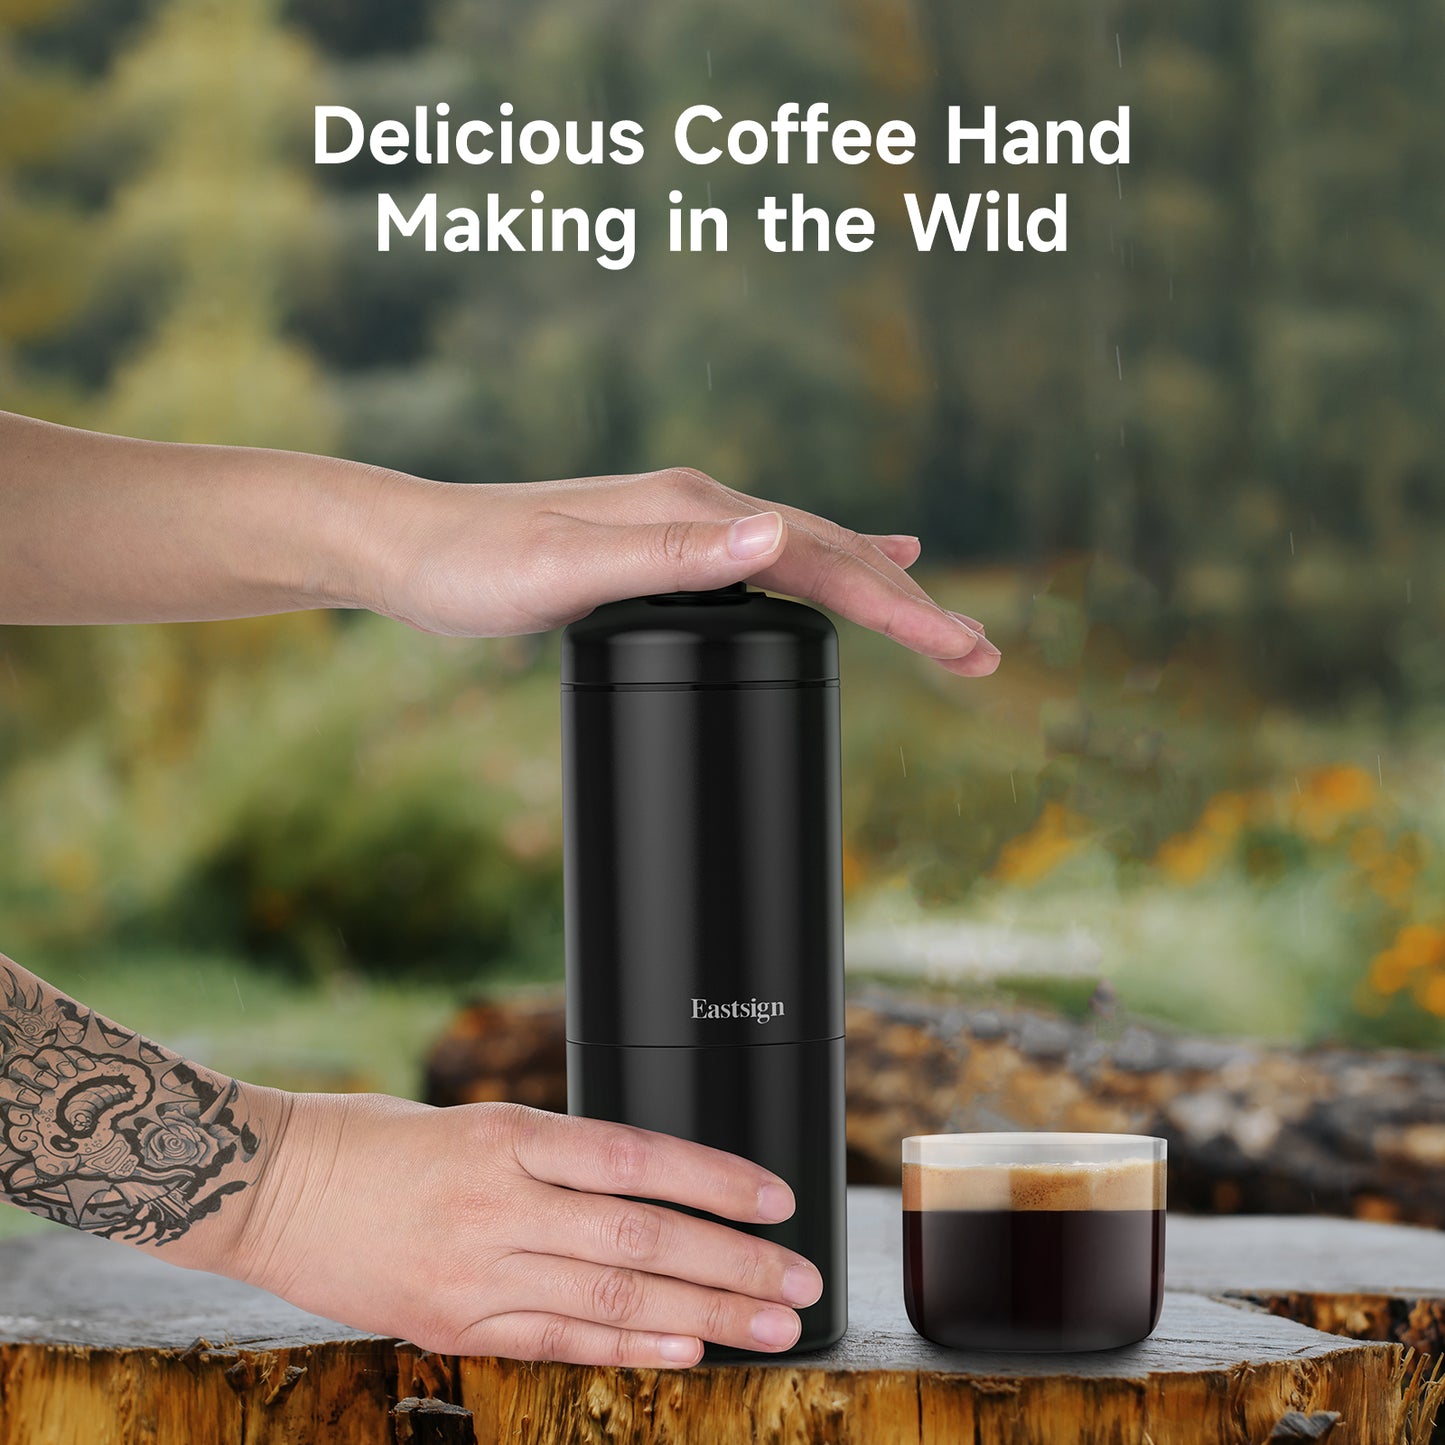 Manual Portable Coffee Maker, Espresso Coffee Machine, Nespresso Capsule Compatible